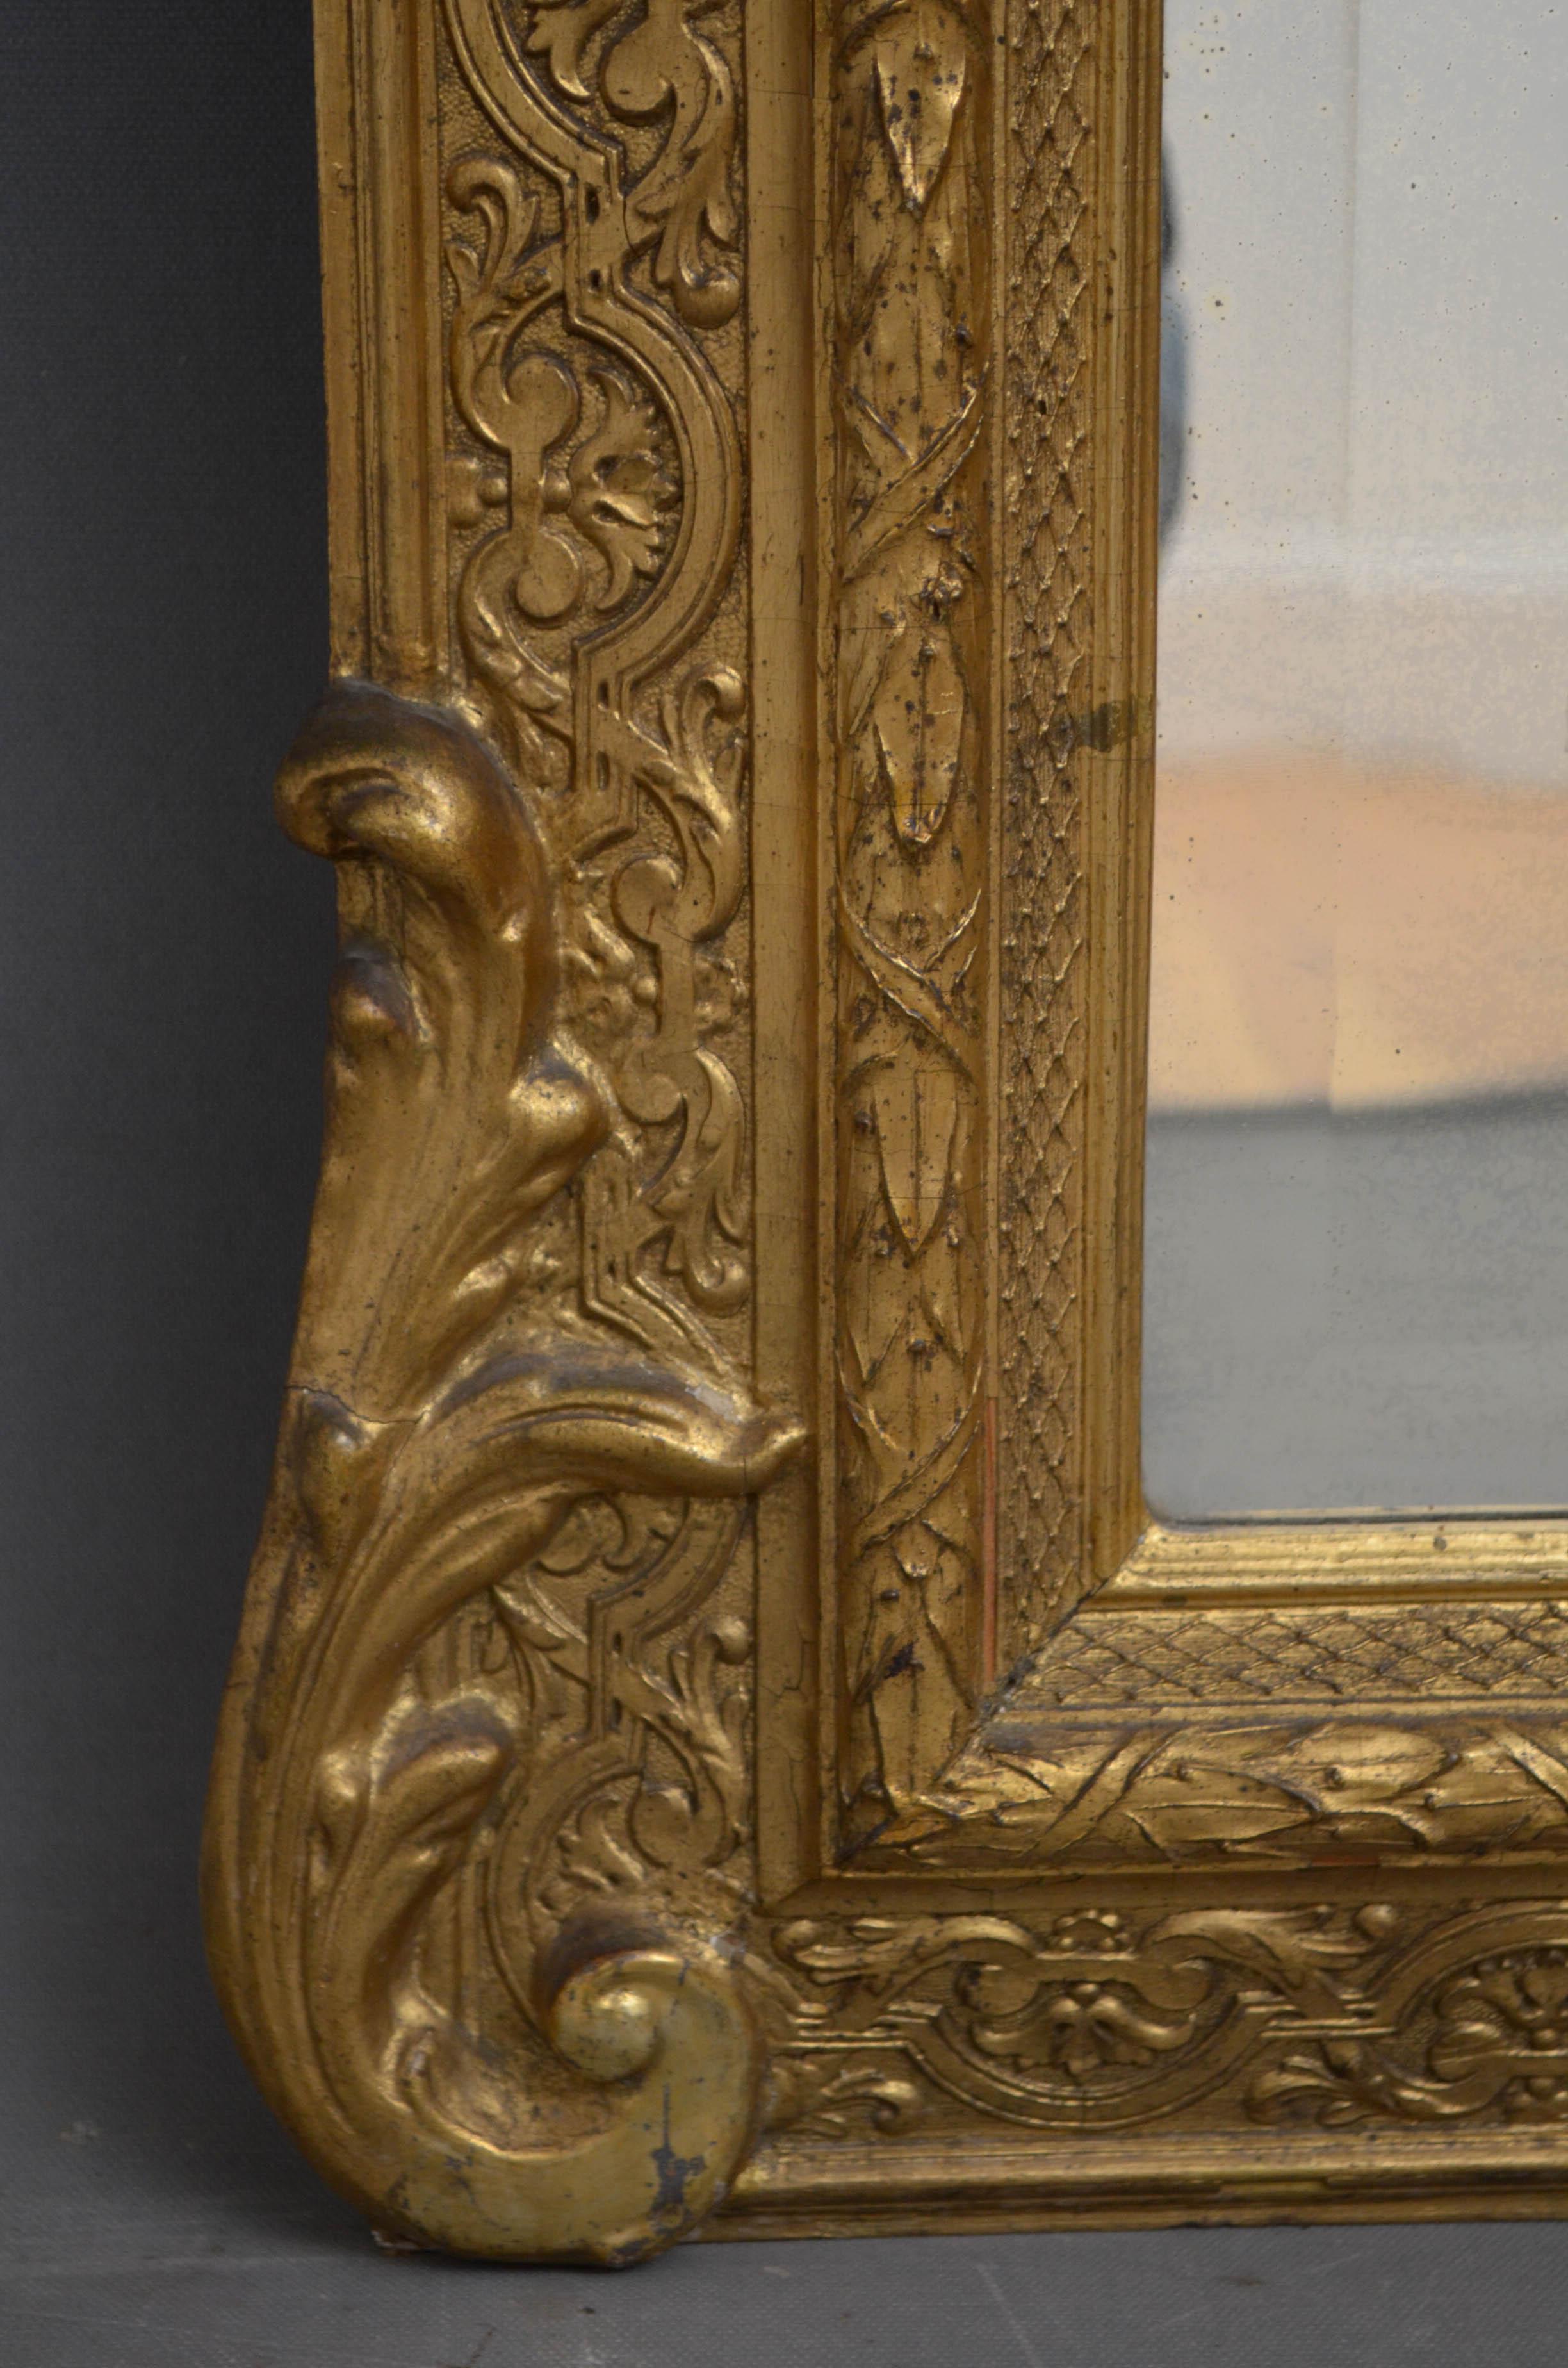 Sn4589 Vergoldeter viktorianischer Wandspiegel mit originalem, abgeschrägtem Glas mit einigen Stockflecken in einem fein geschnitzten Rahmen. Dieser antike Spiegel bewahrt sein ursprüngliches Glas, die Vergoldung und die Rückwand, um